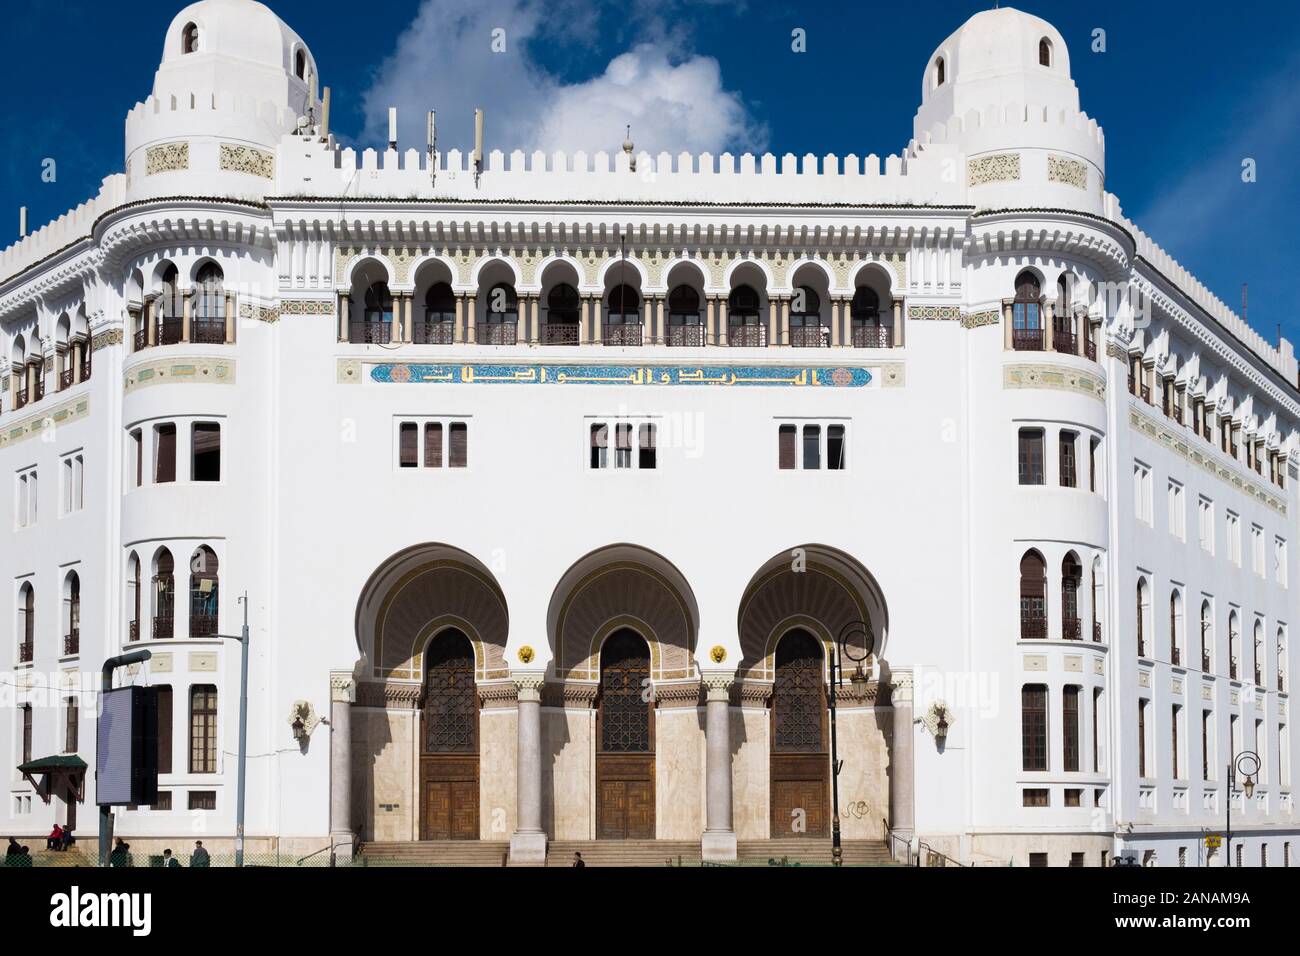 Französische Architektur, gemischt mit islamischem Stil, ist in der Innenstadt von Algier, Algerien verbreitet Stockfoto